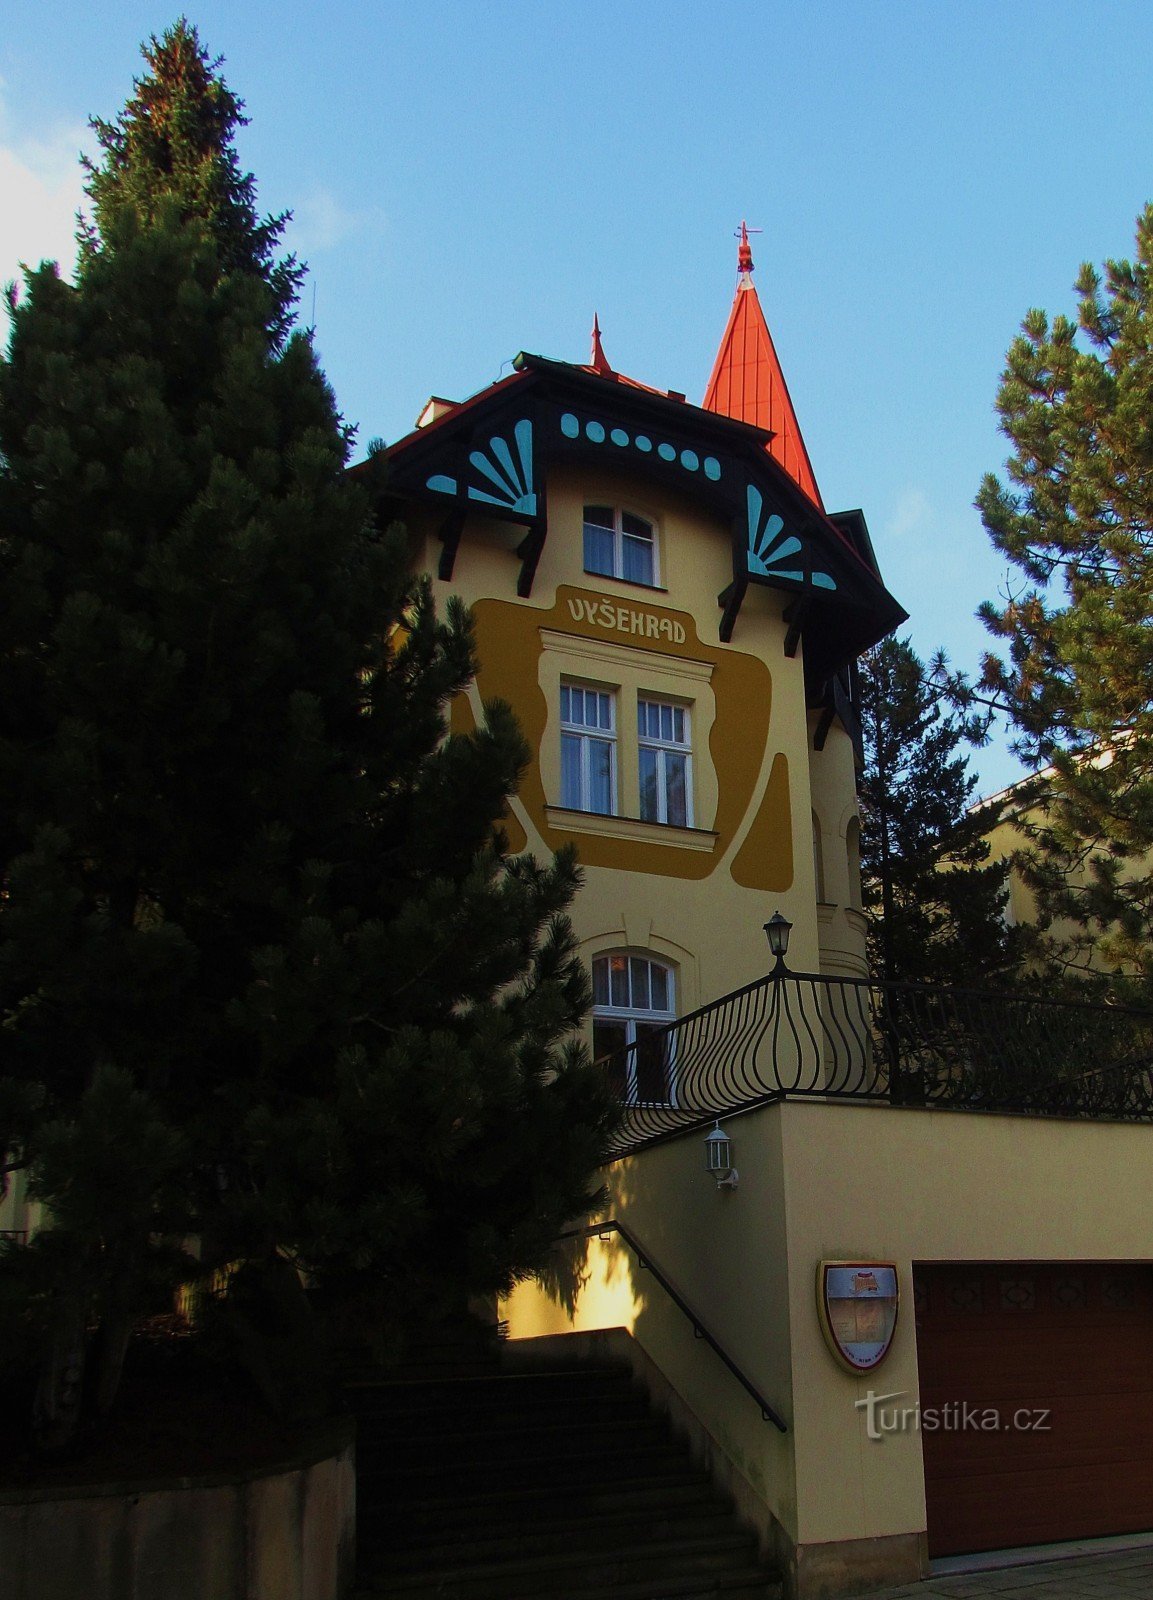 Hotel Vyšehrad in Luhačovice